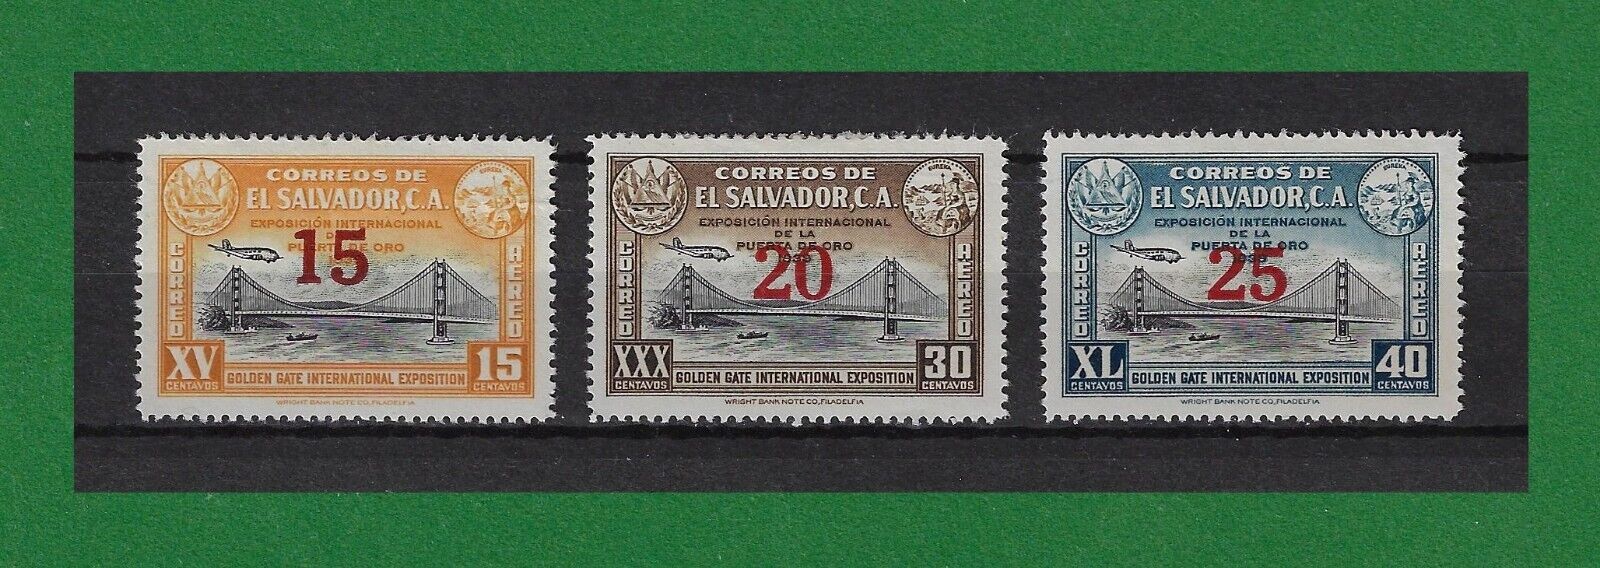 S439, Salvador, El Salvador 1942-4, Air Mail, Servicio Aereo, Mint, See Scans